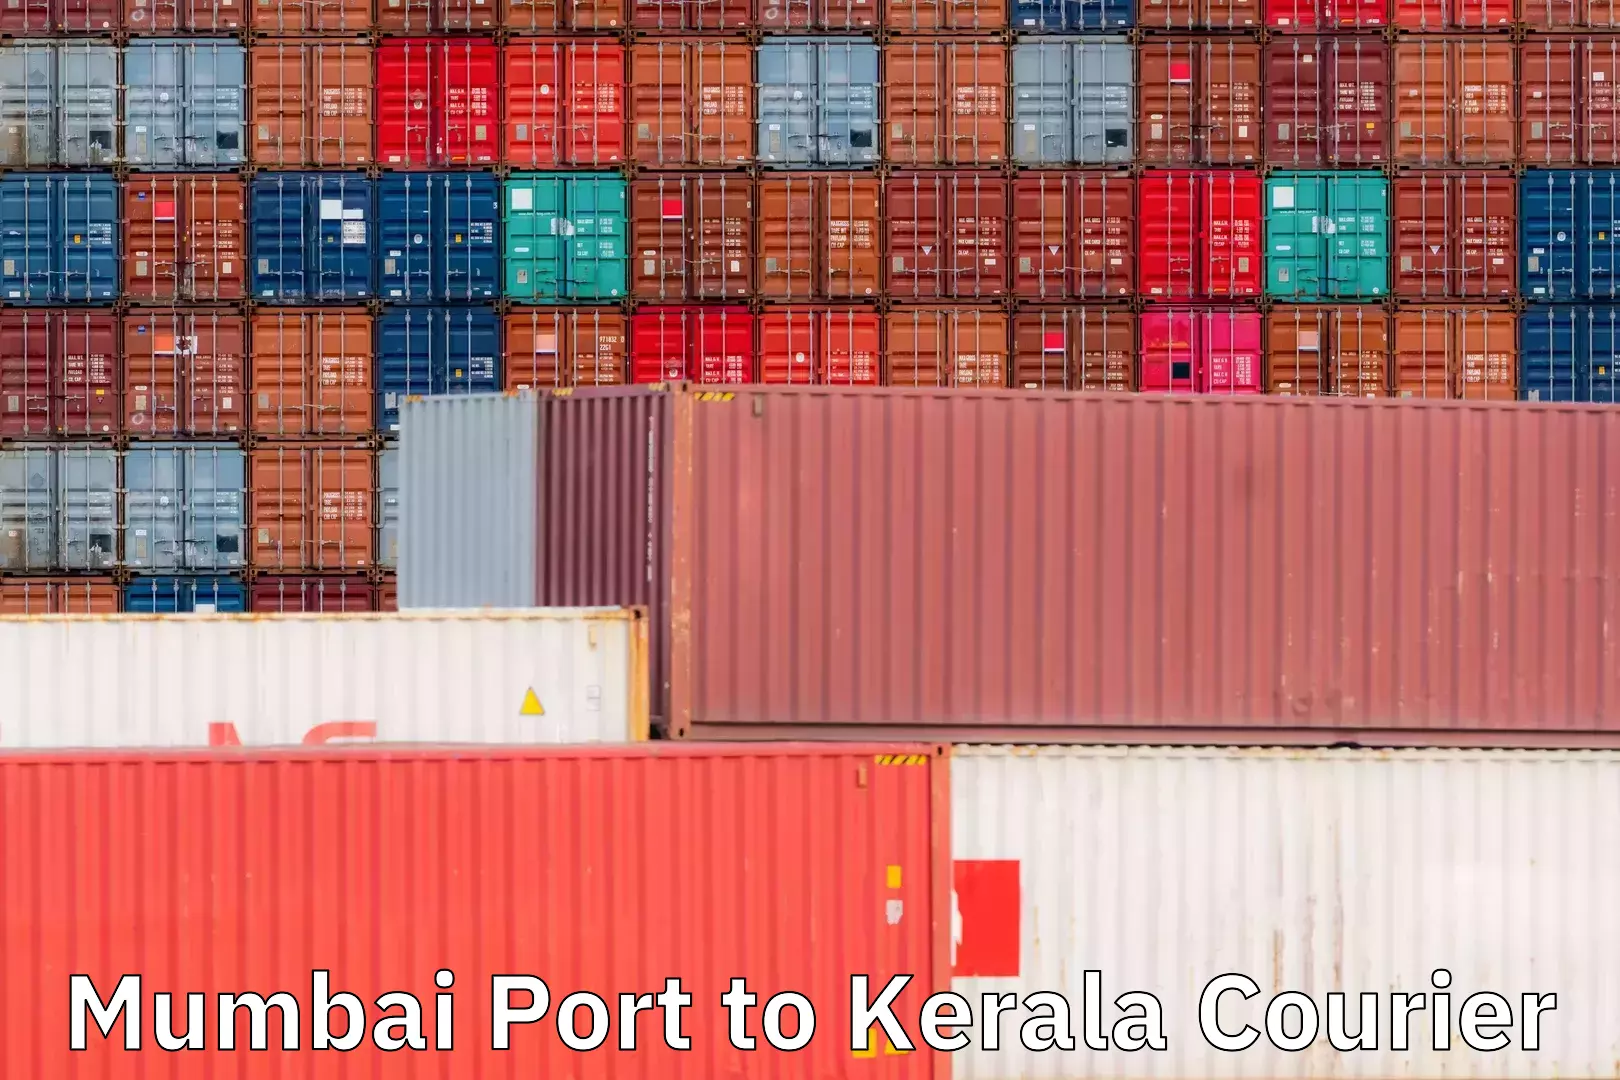 Express logistics service Mumbai Port to Kerala